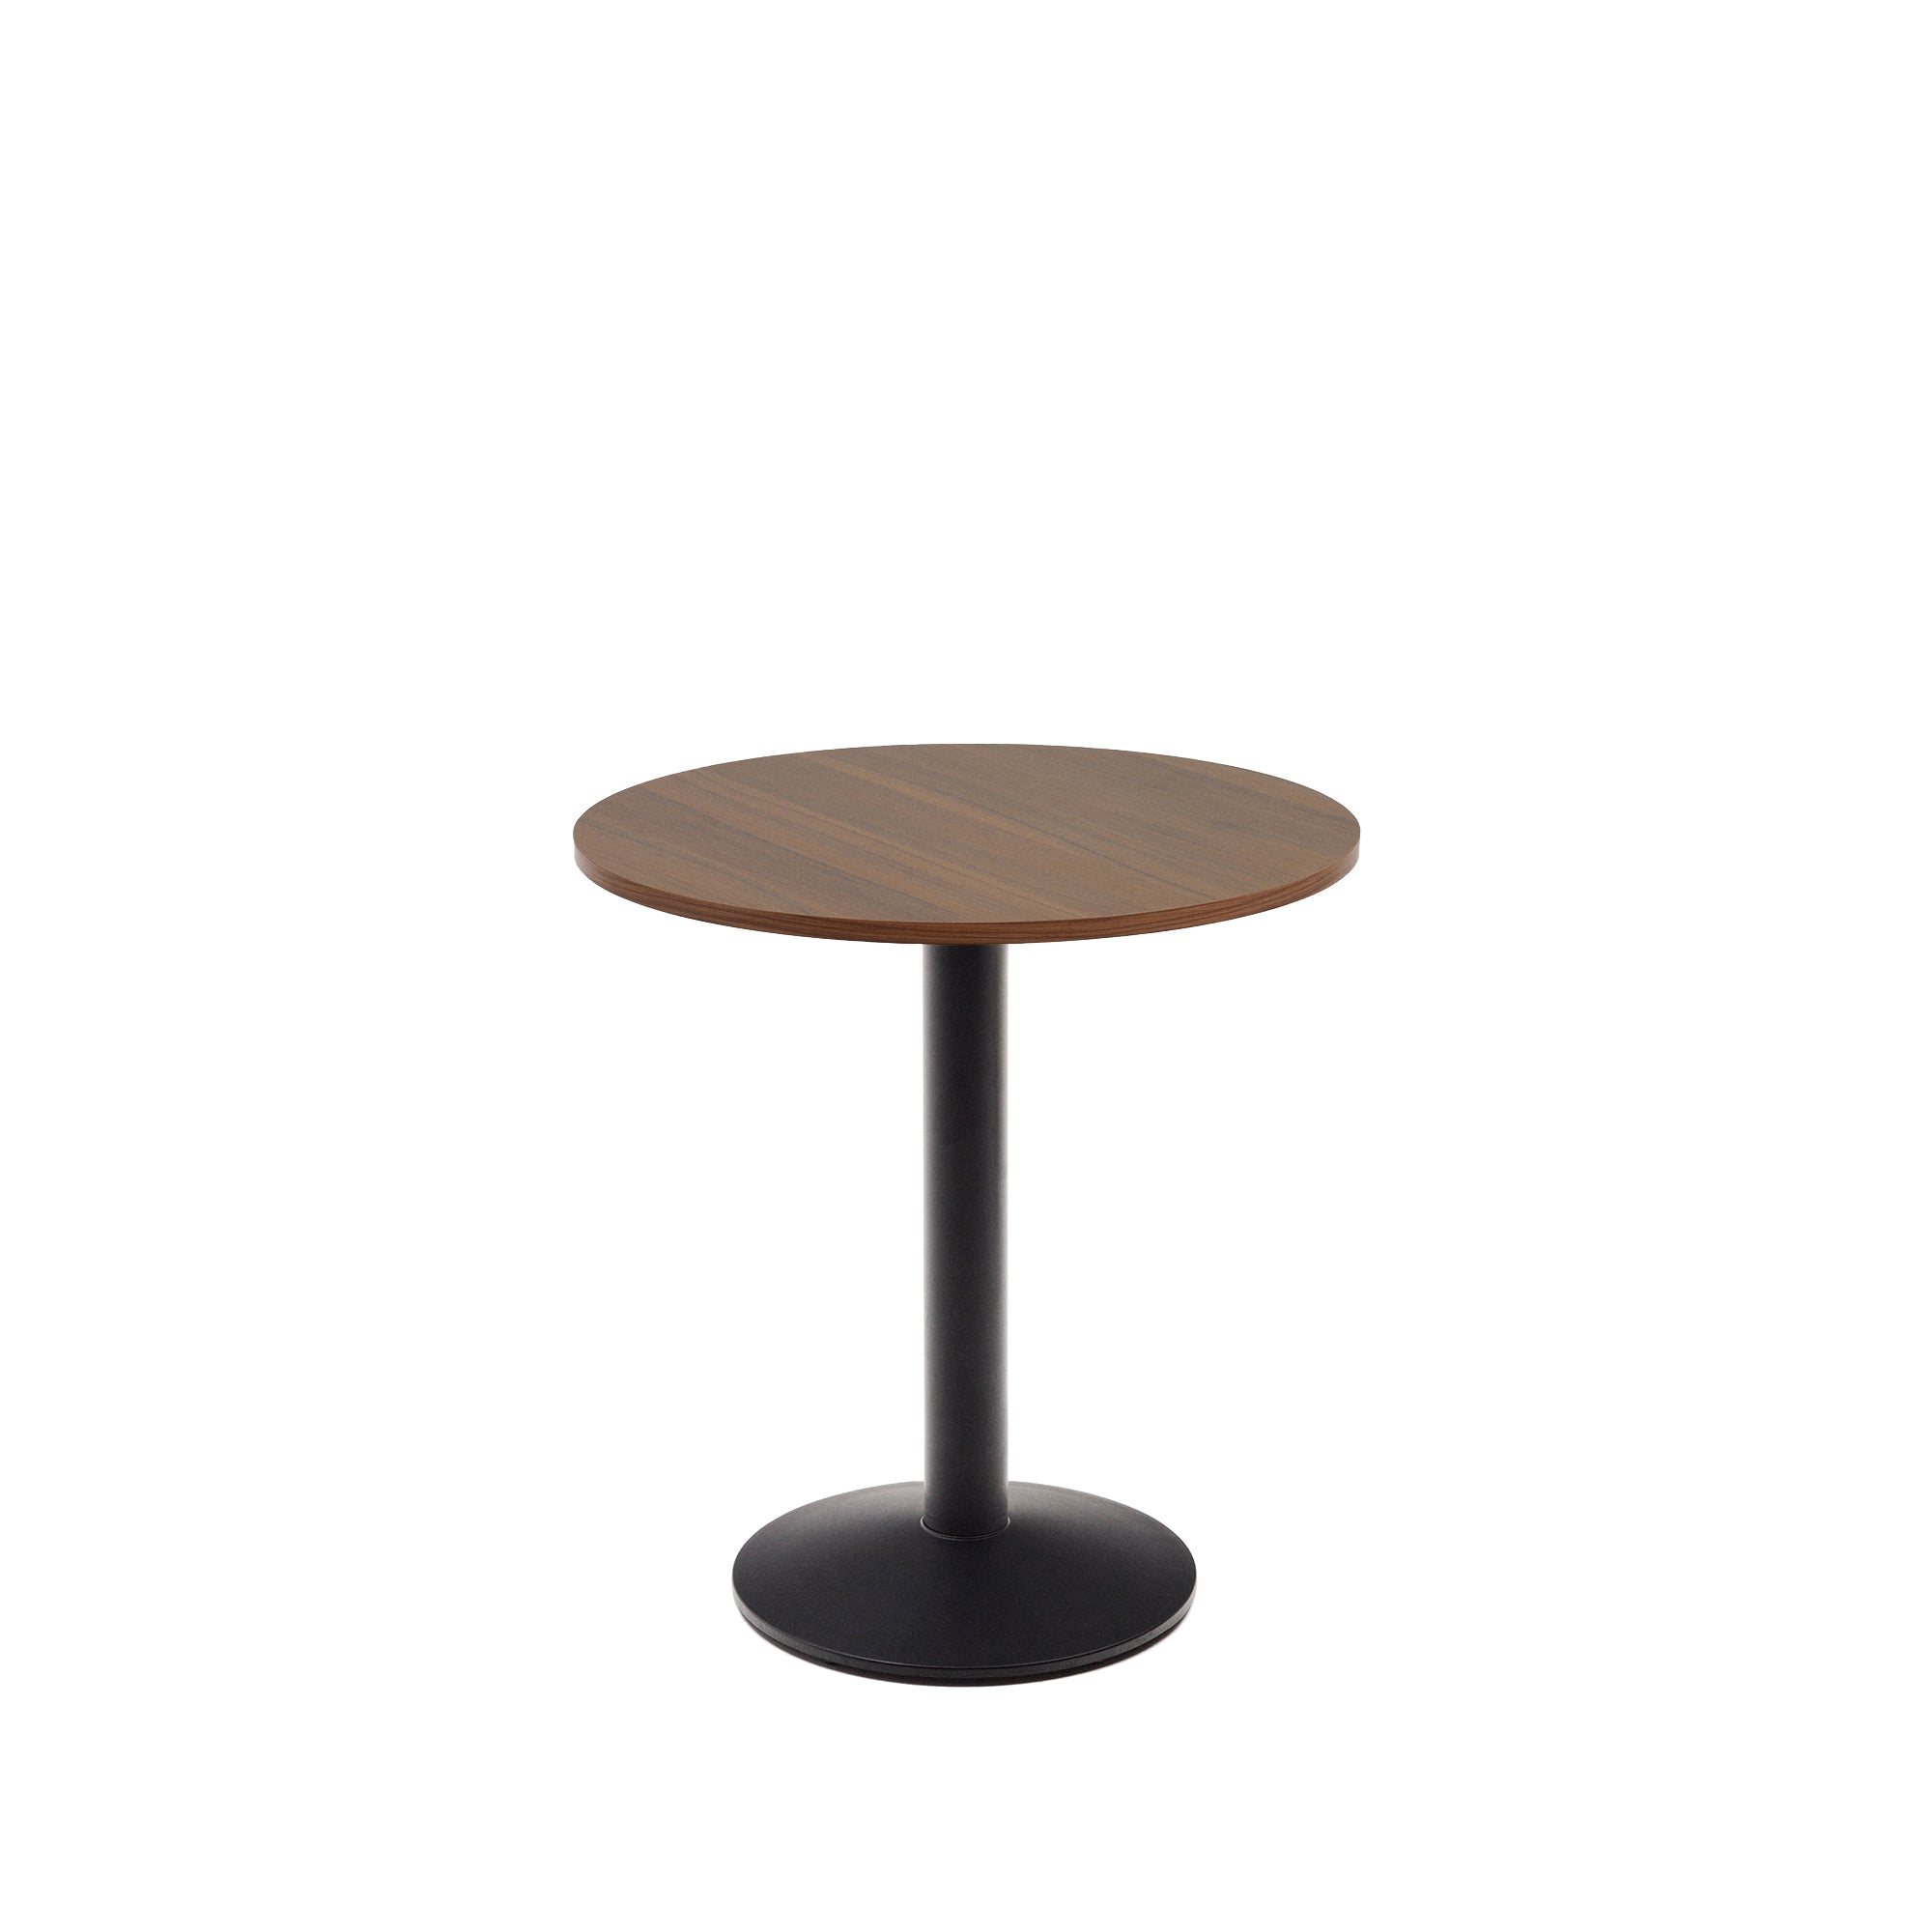 Esilda kerek asztal, diófa melaminból, fekete festett fémlábbal, Ø70x70 cm, Ø70x70 cm